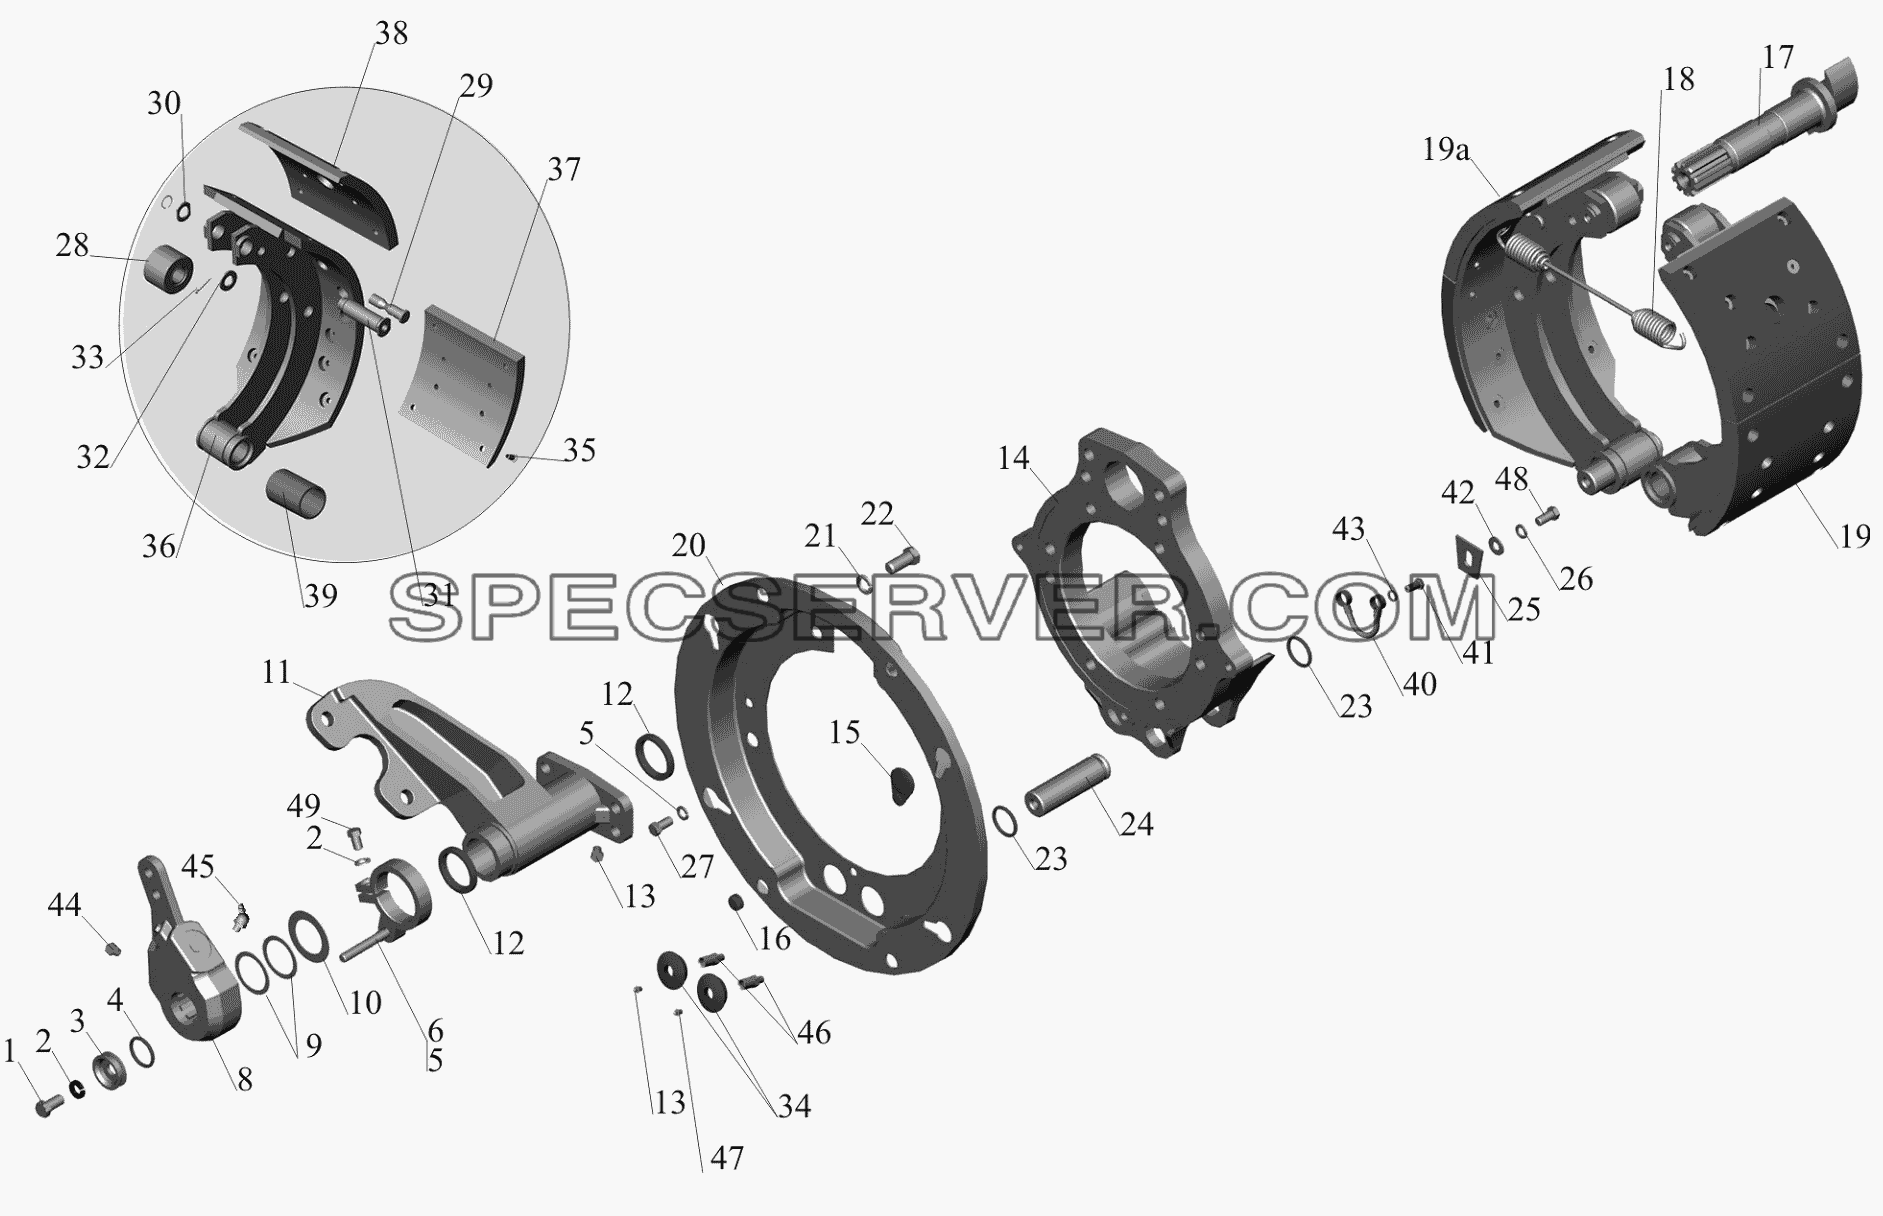 Тормозной механизм передних колес 6516-3501004 (6516-3501005) для МАЗ-650119 (список запасных частей)